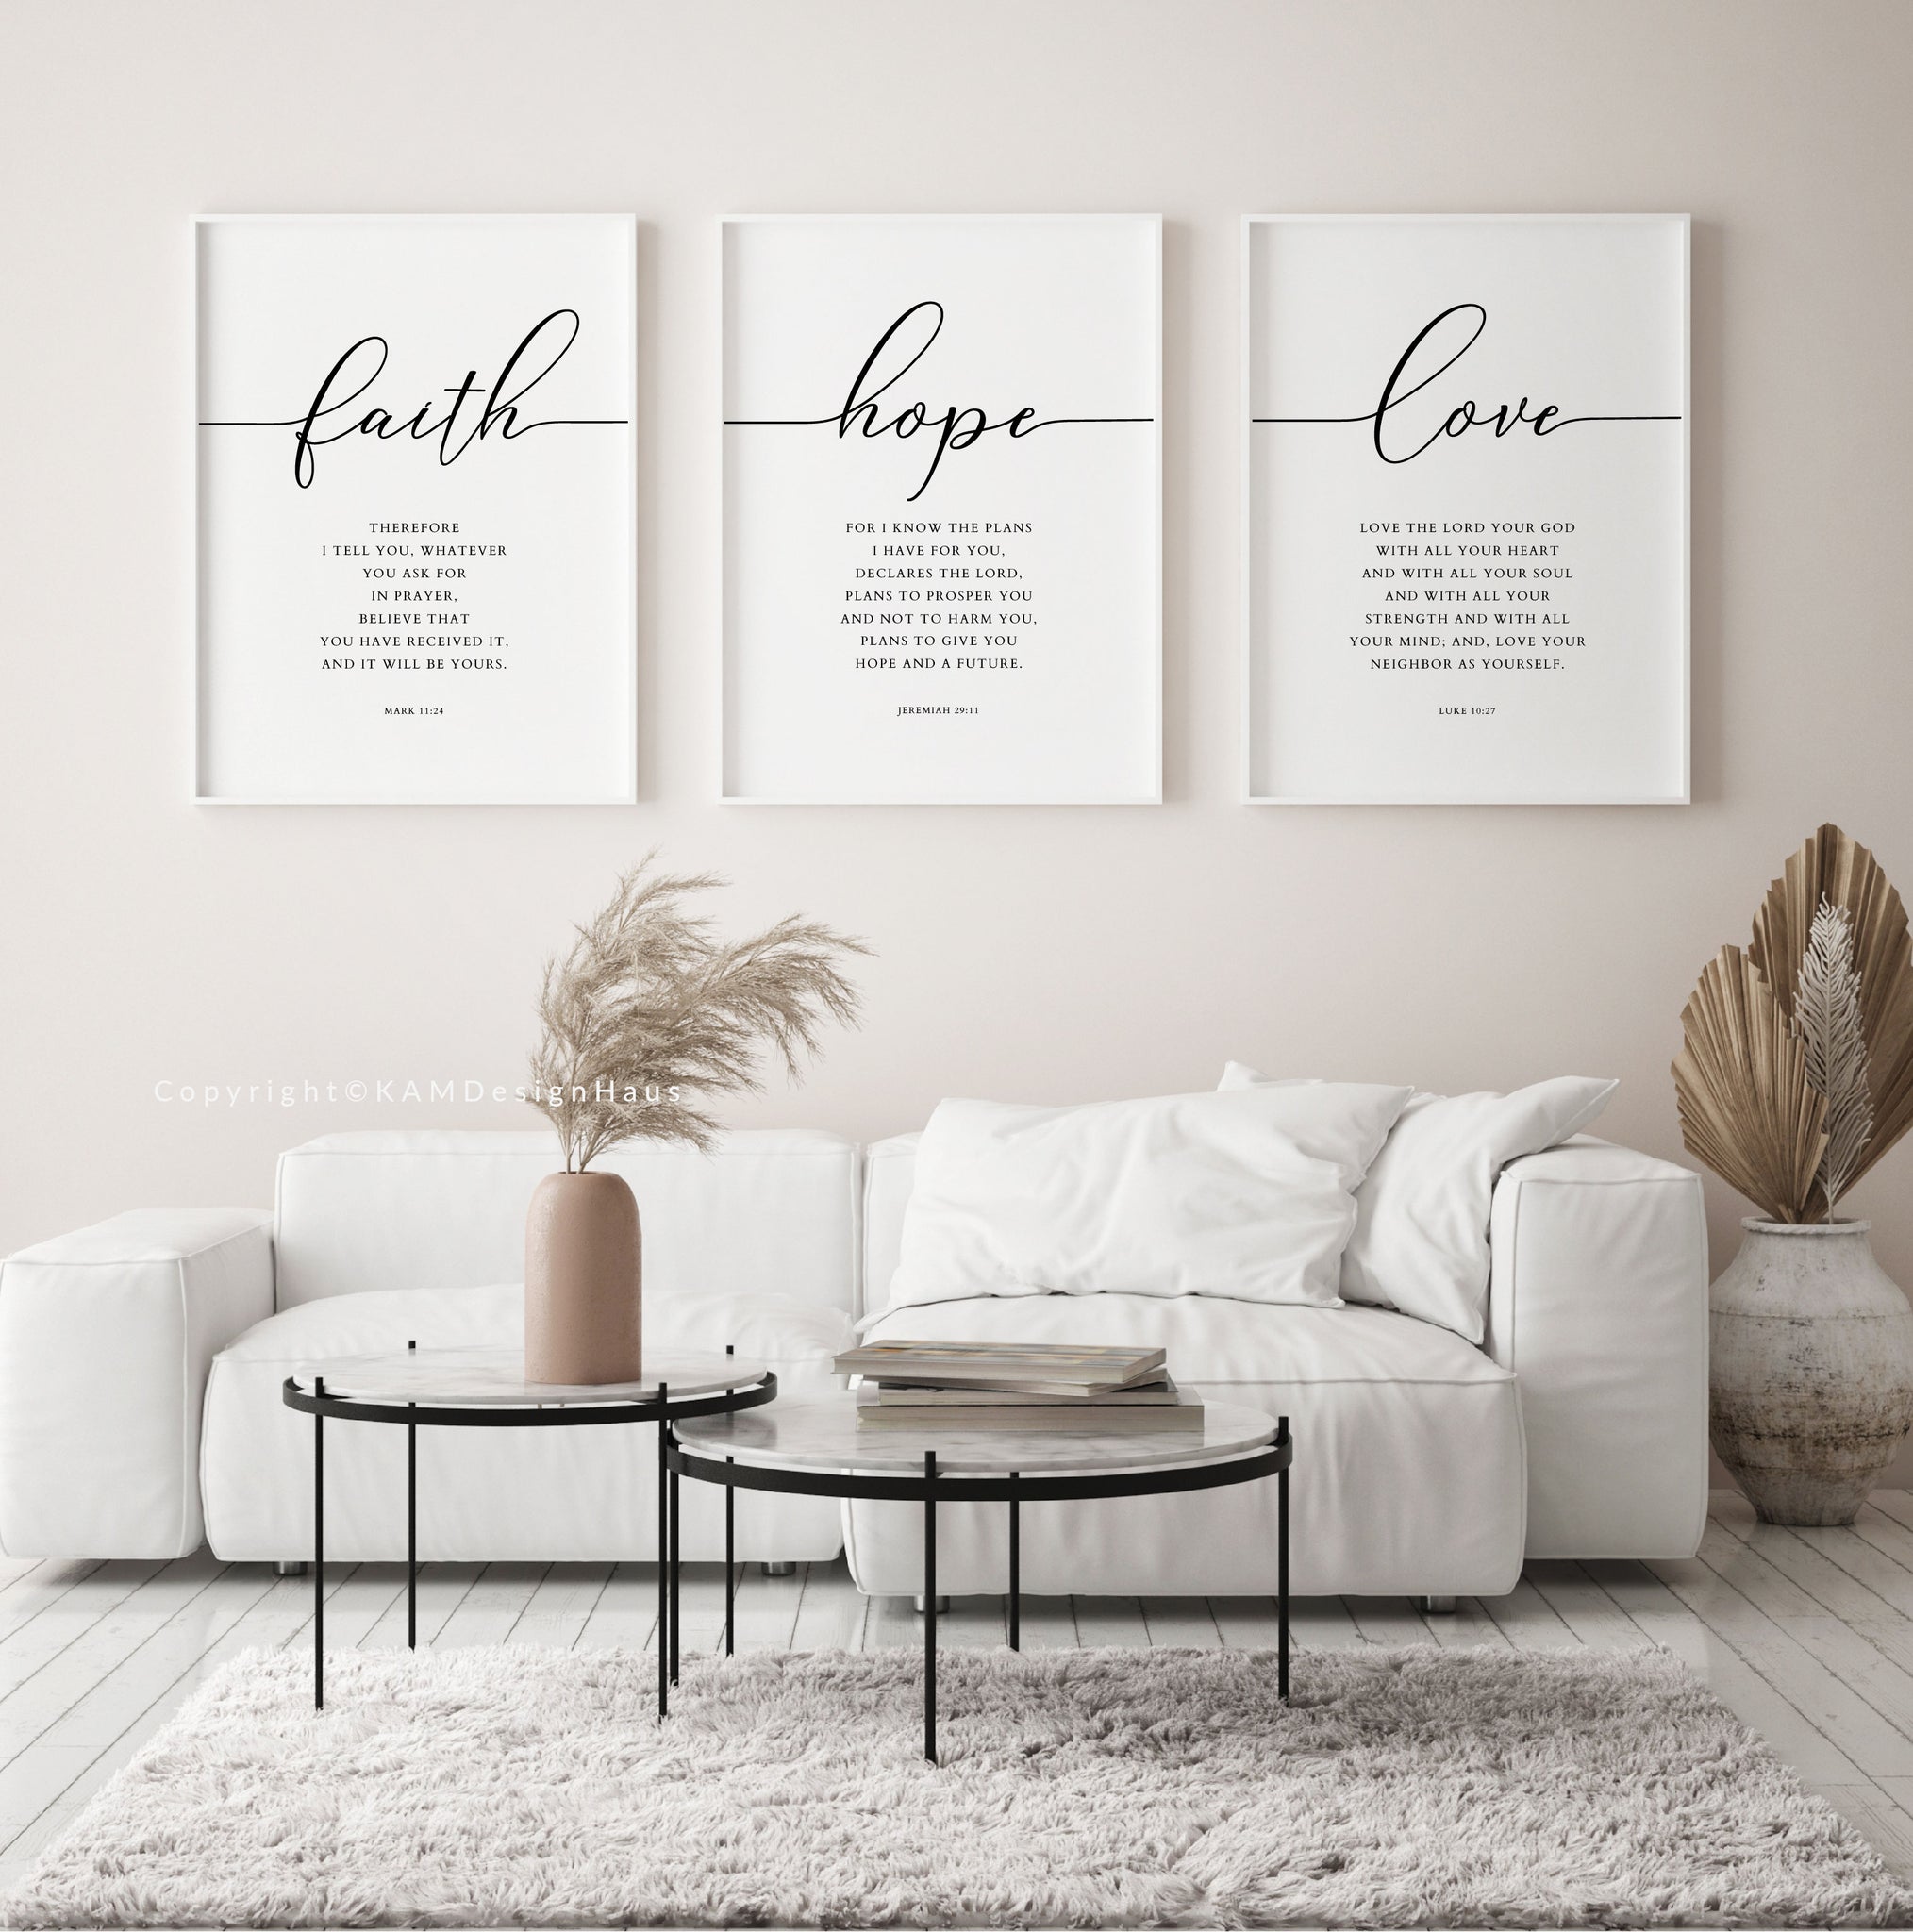 faith hope love design